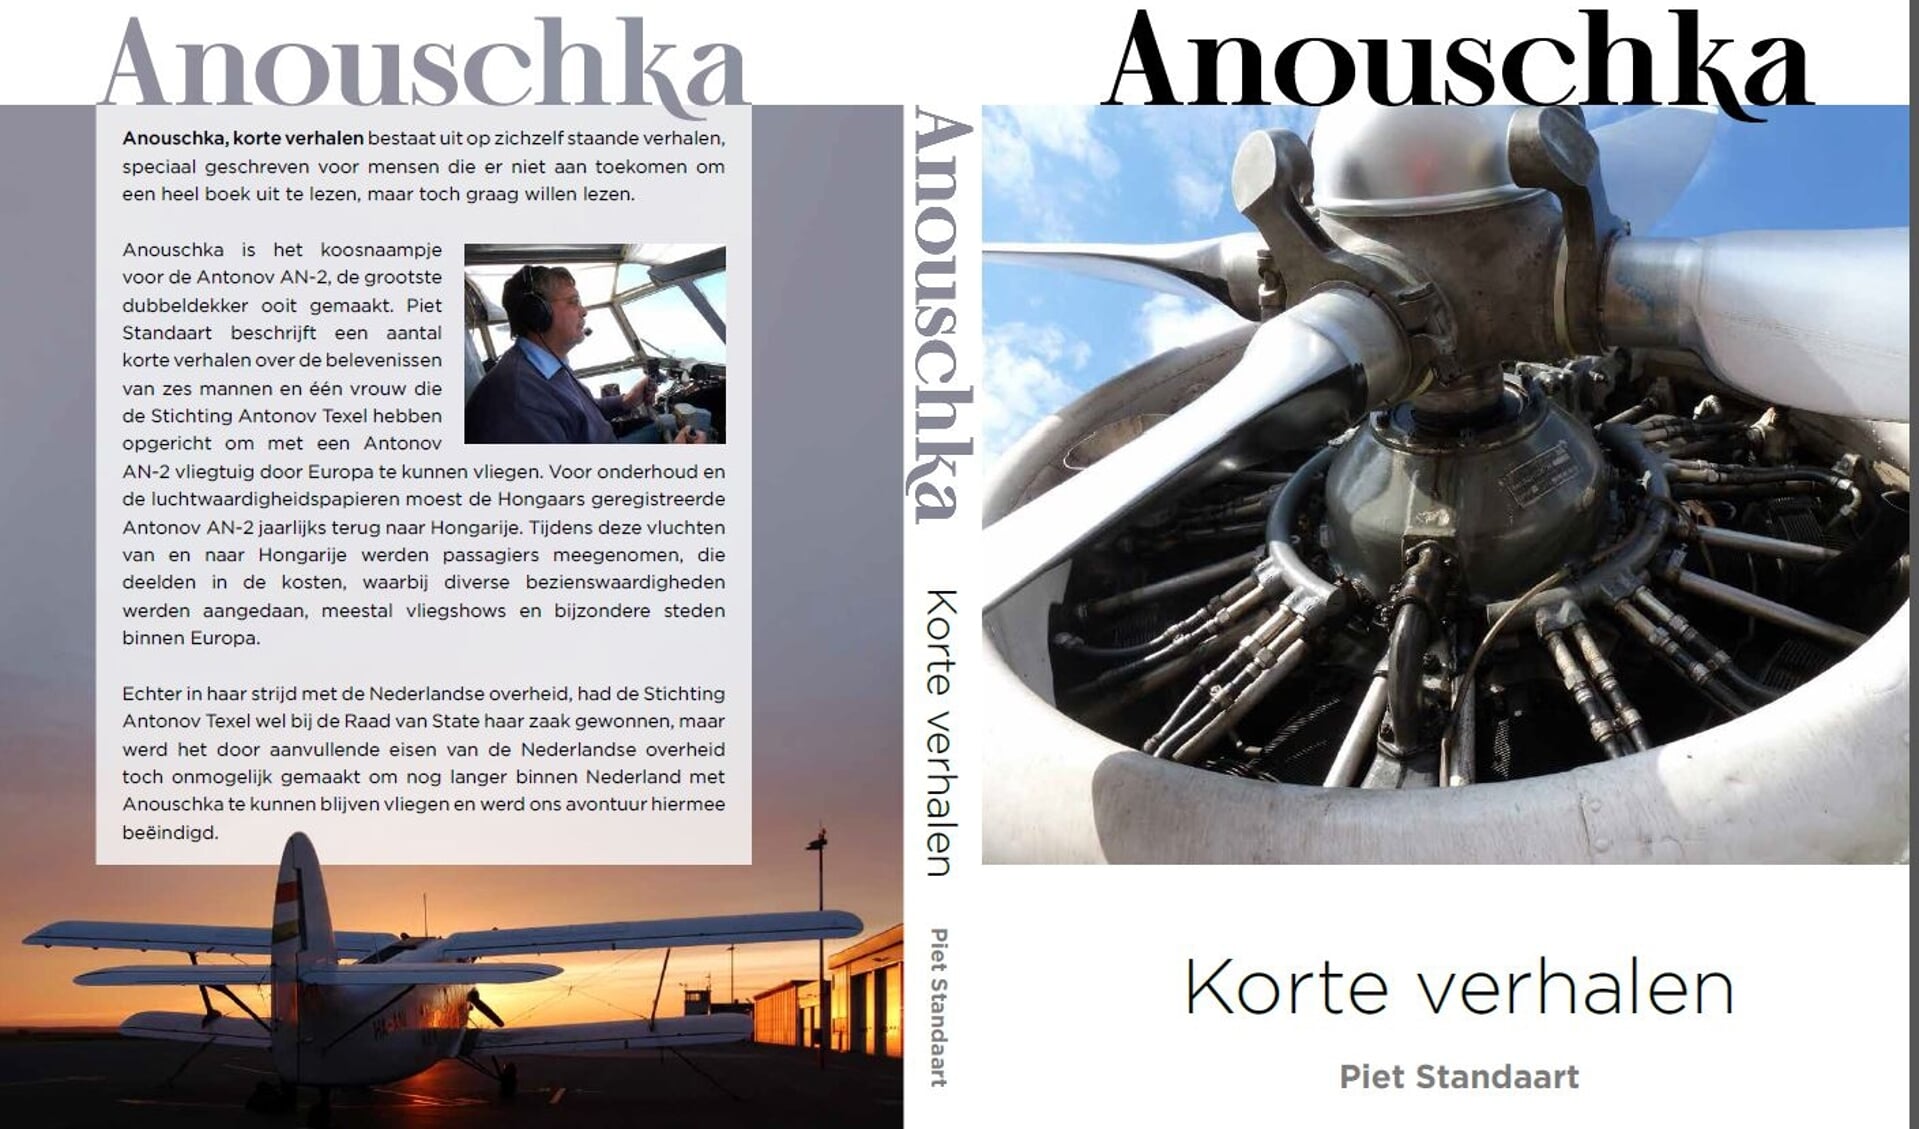 Omslag van "Anouschka", het boek met 18 korte verhalen over de belevenissen met de Antonov.